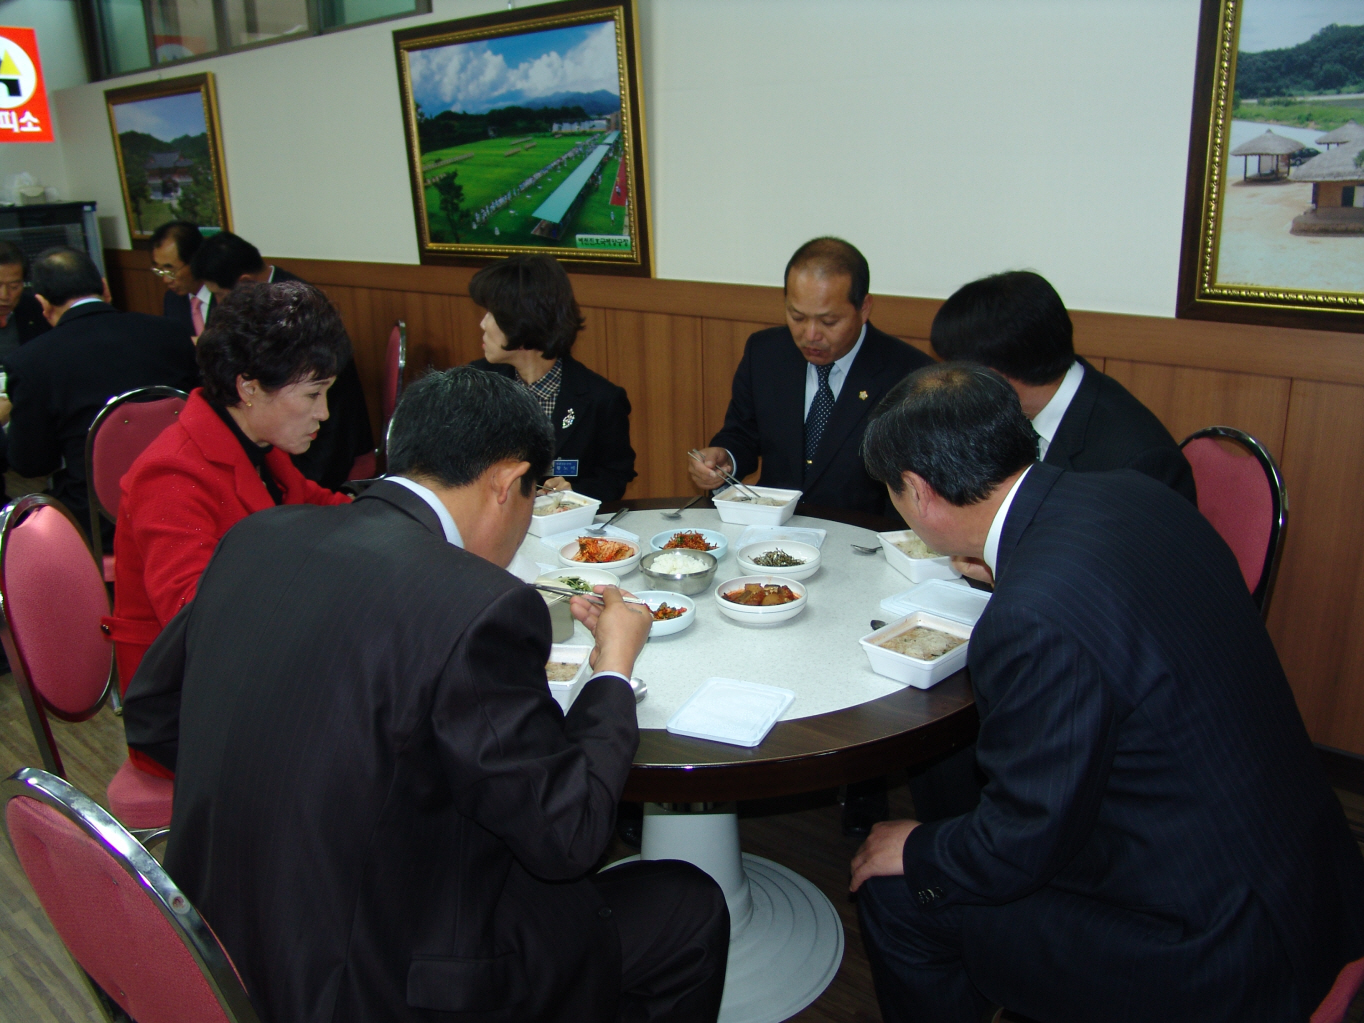 '쌀소비 촉진 시식회' 게시글의 사진(3) '쌀소비 촉진을 위한 쌀국수 시식회 2009.11.16.003.JPG'